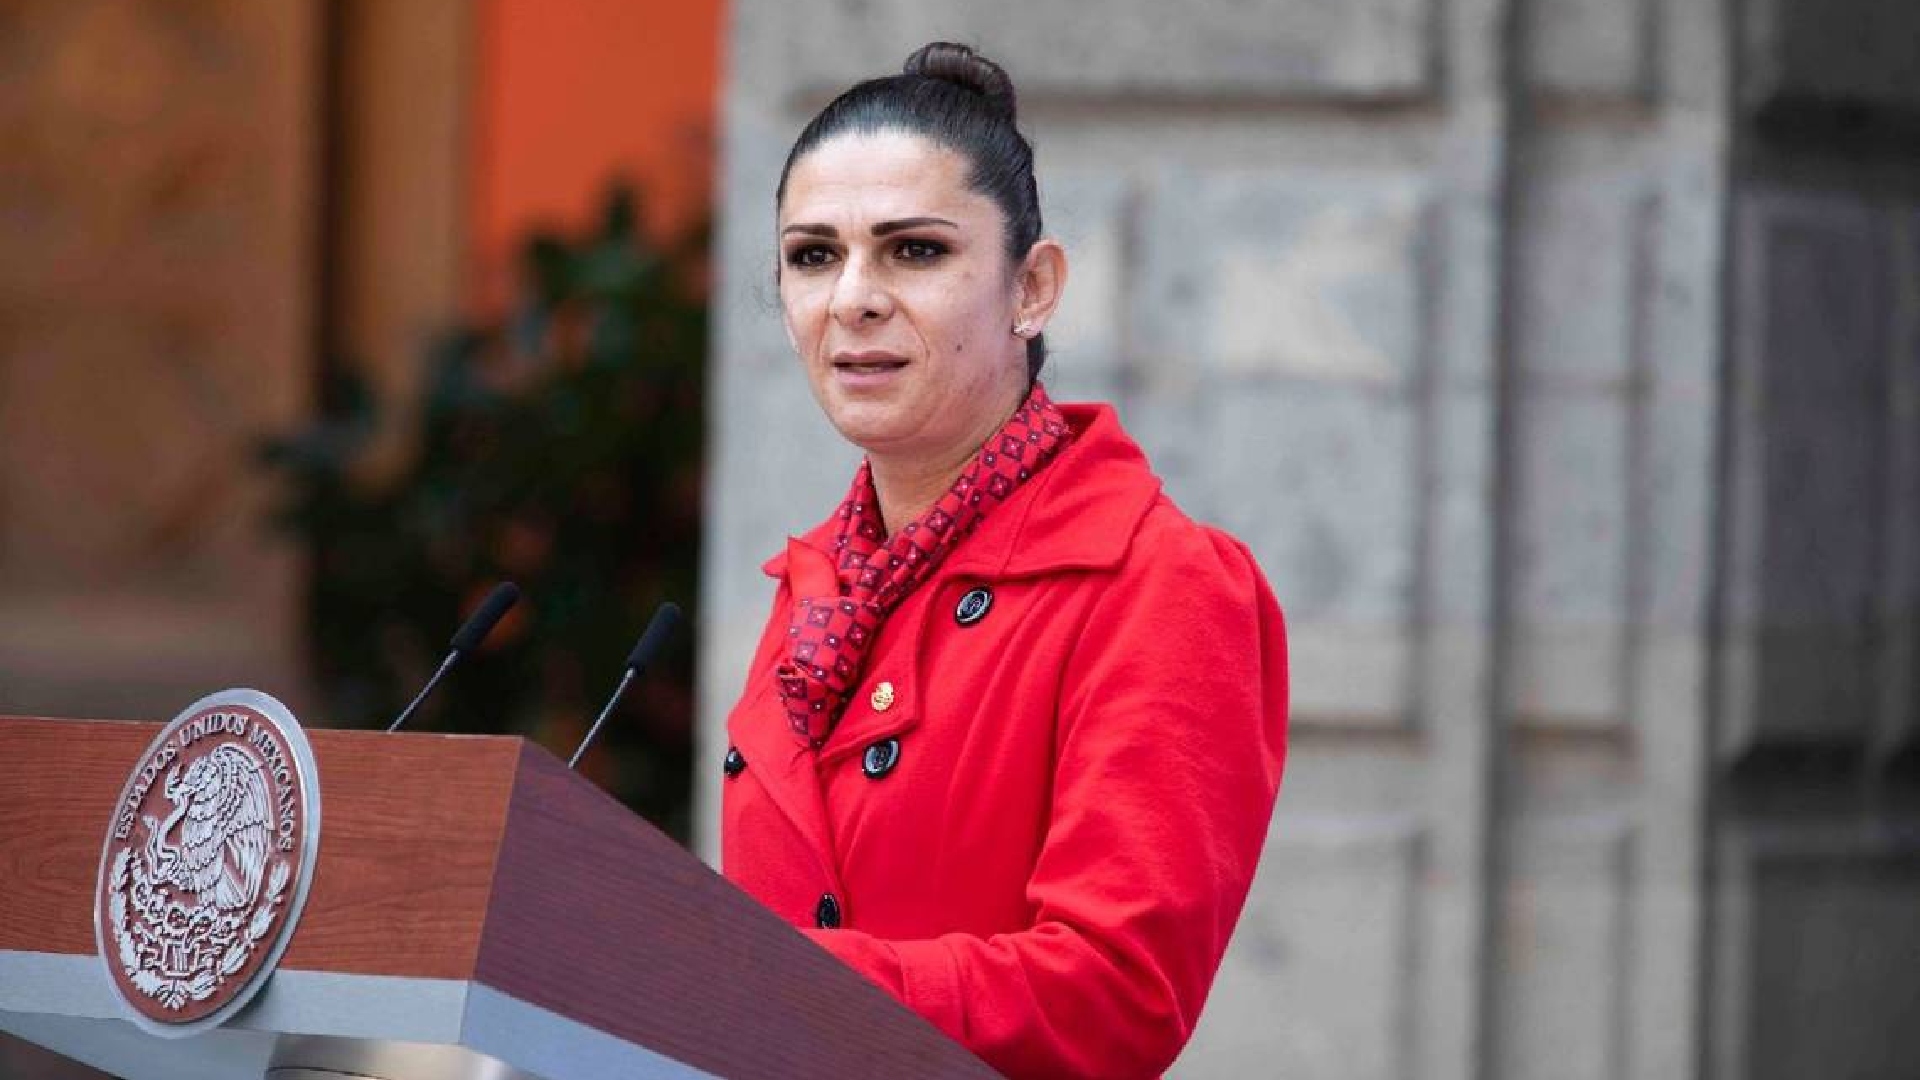 Equipo de nado sincronizado tomará medidas legales contra de Ana Guevara, advirtió abogado